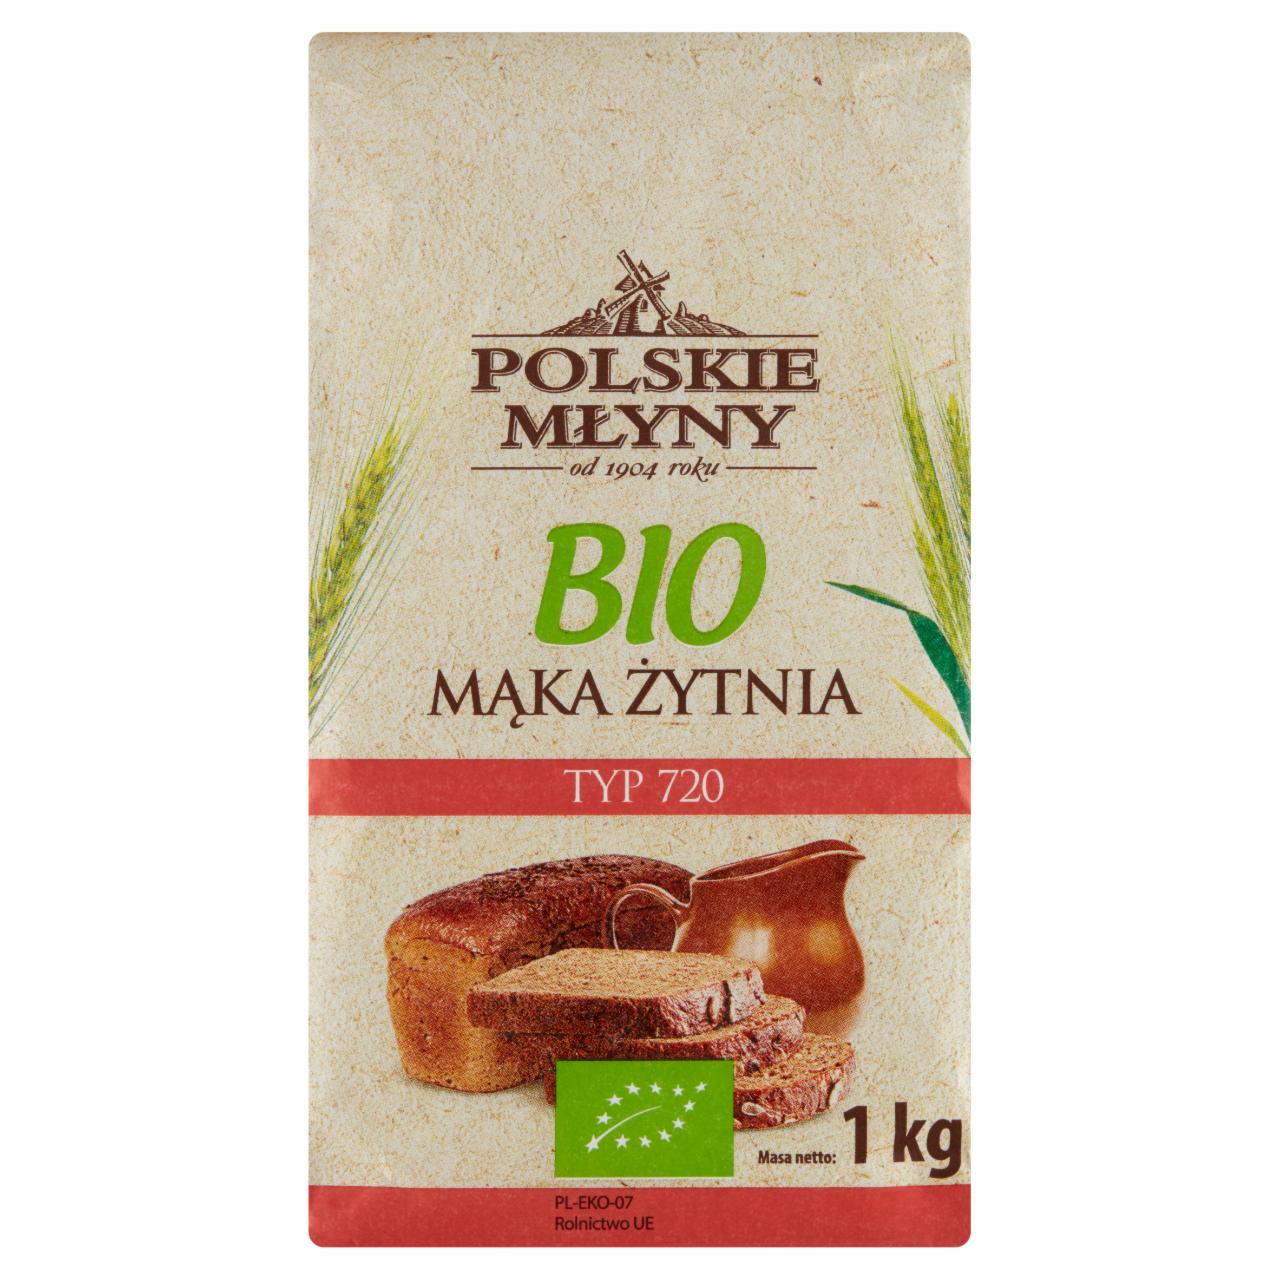 Zdjęcia - Polskie Młyny Bio Mąka żytnia typ 720 1 kg